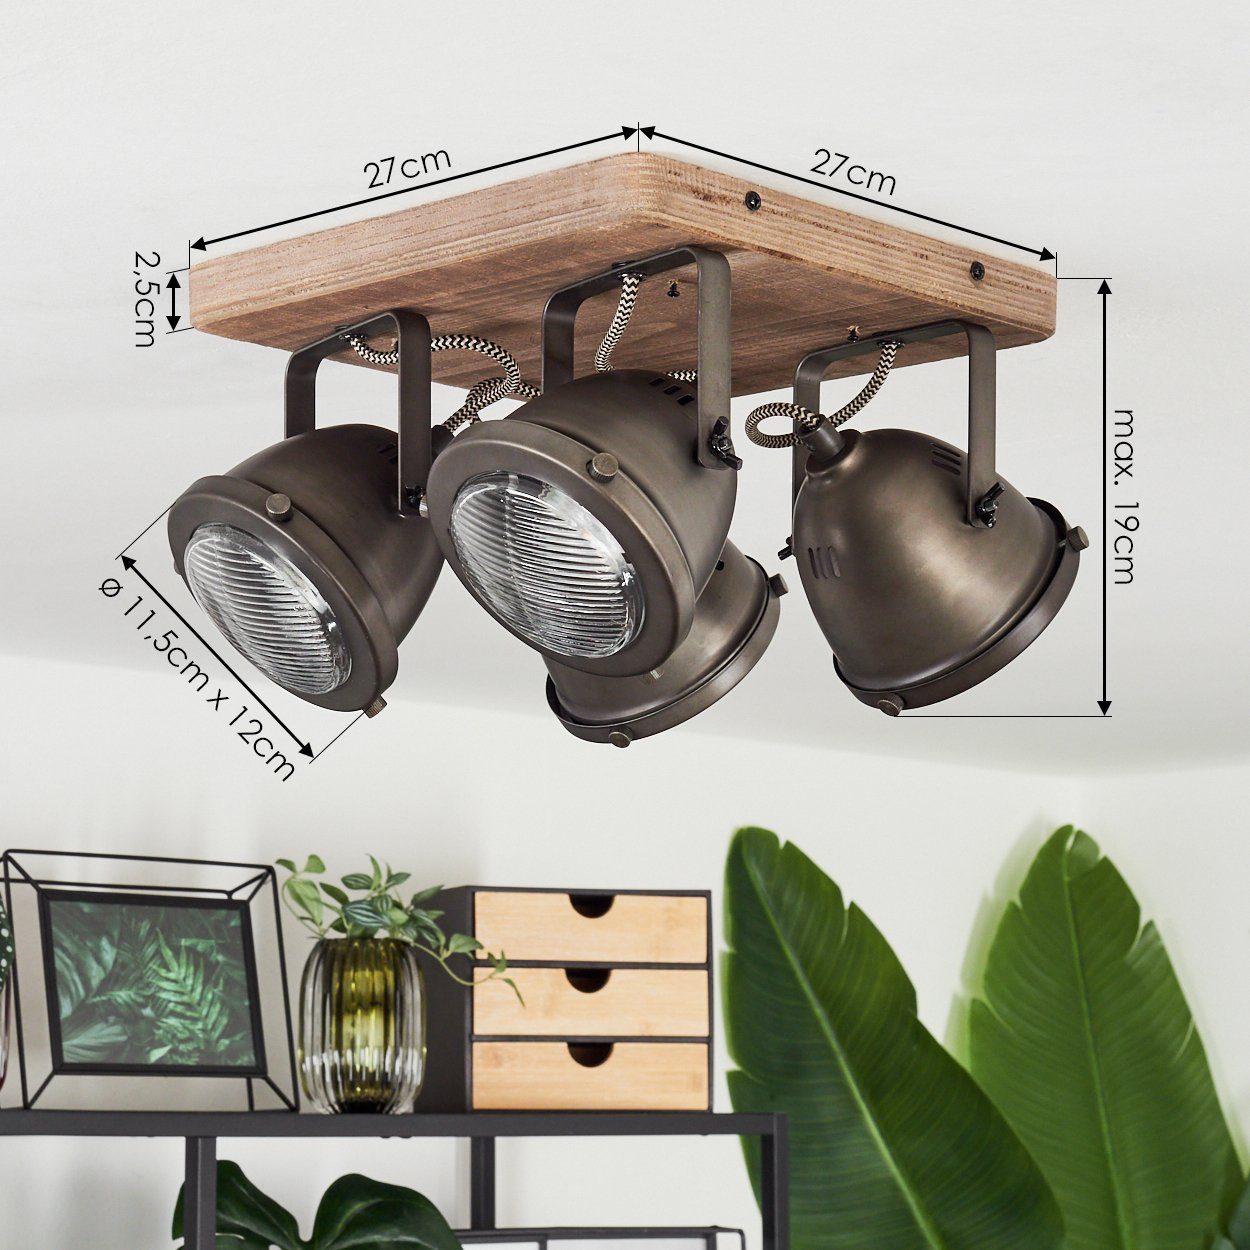 Braun, Deckenlampe Spot »Gavi« dreh-/schwenkbar, Leuchtmittel, in Metall/Holz hofstein im ohne Lampenschirm Deckenleuchte dimmbare 4xGU10, aus Retro-Design